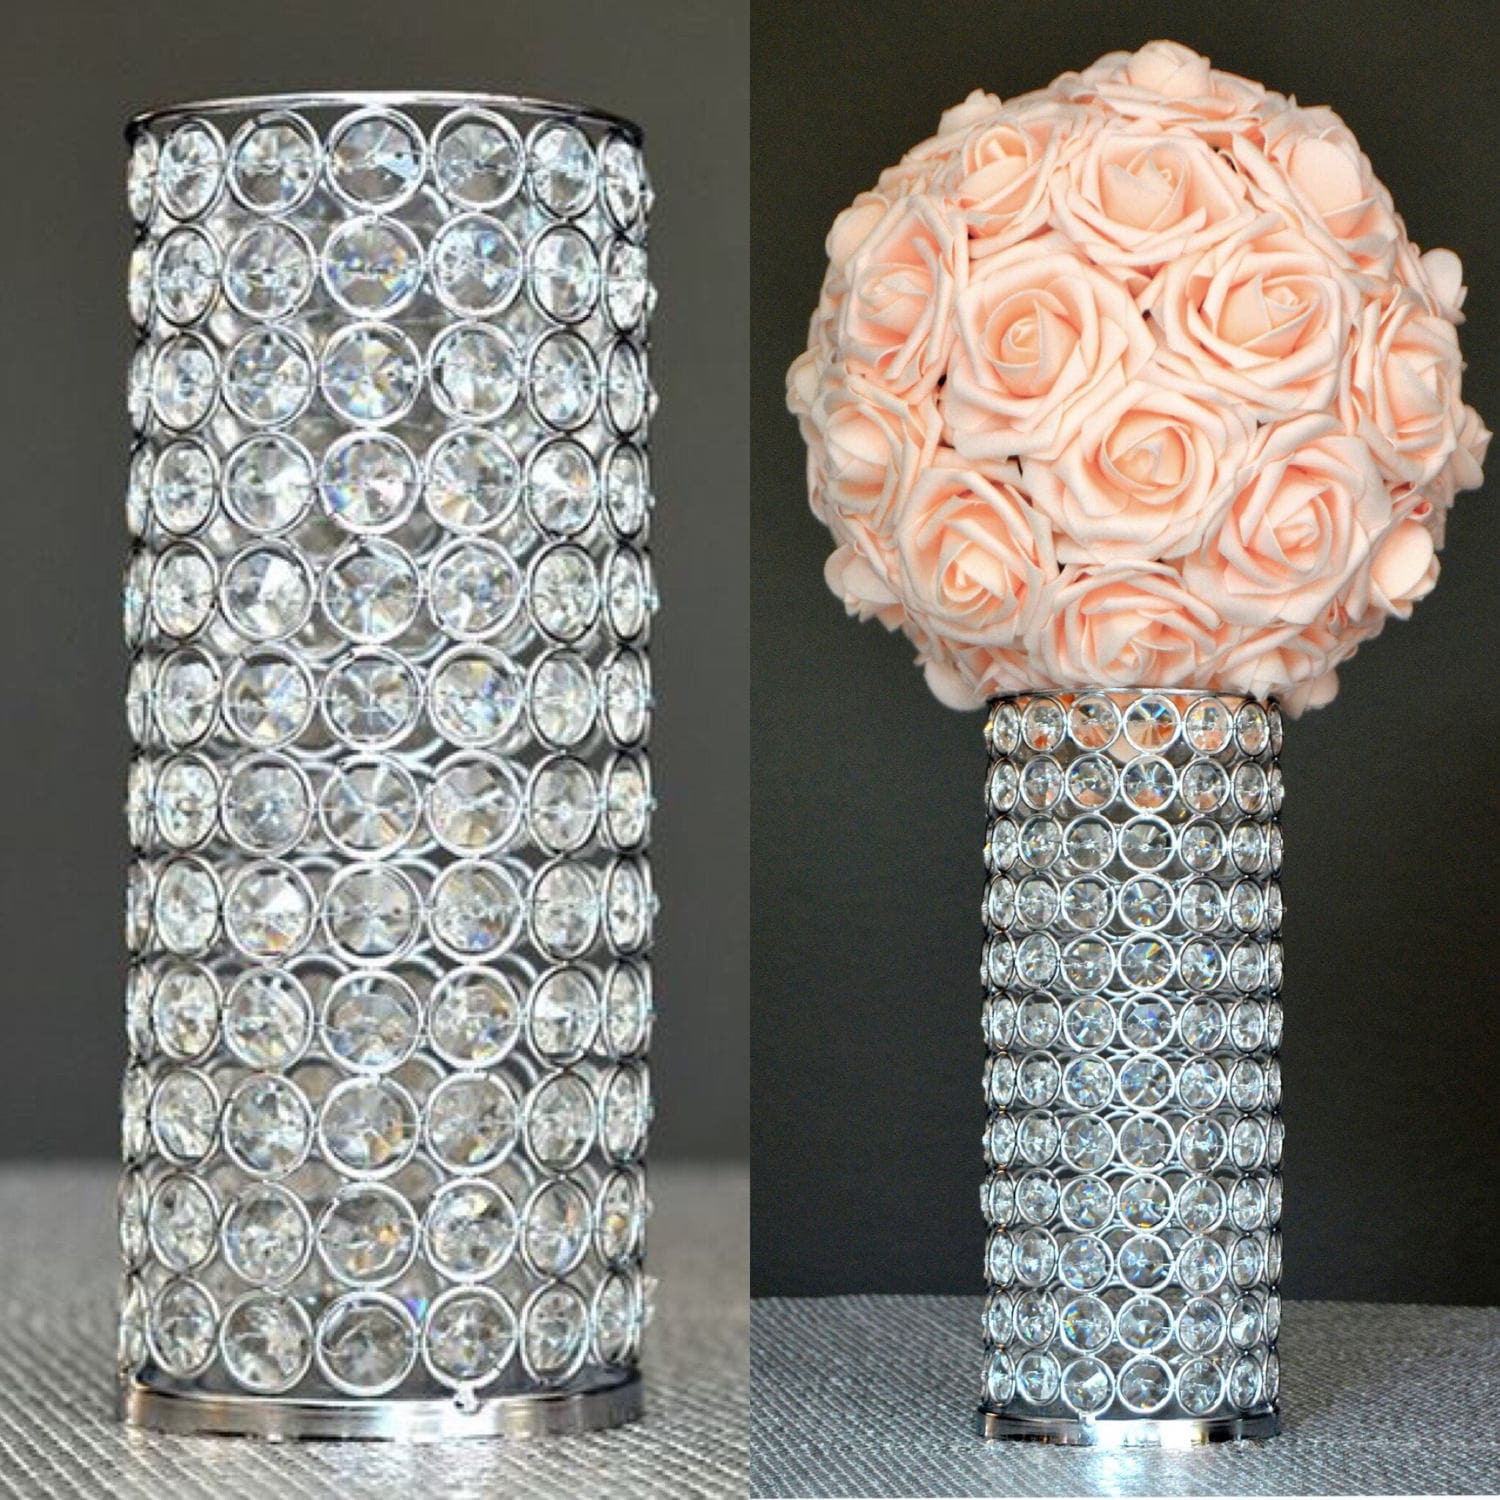 DIY: candle holder with flower vase